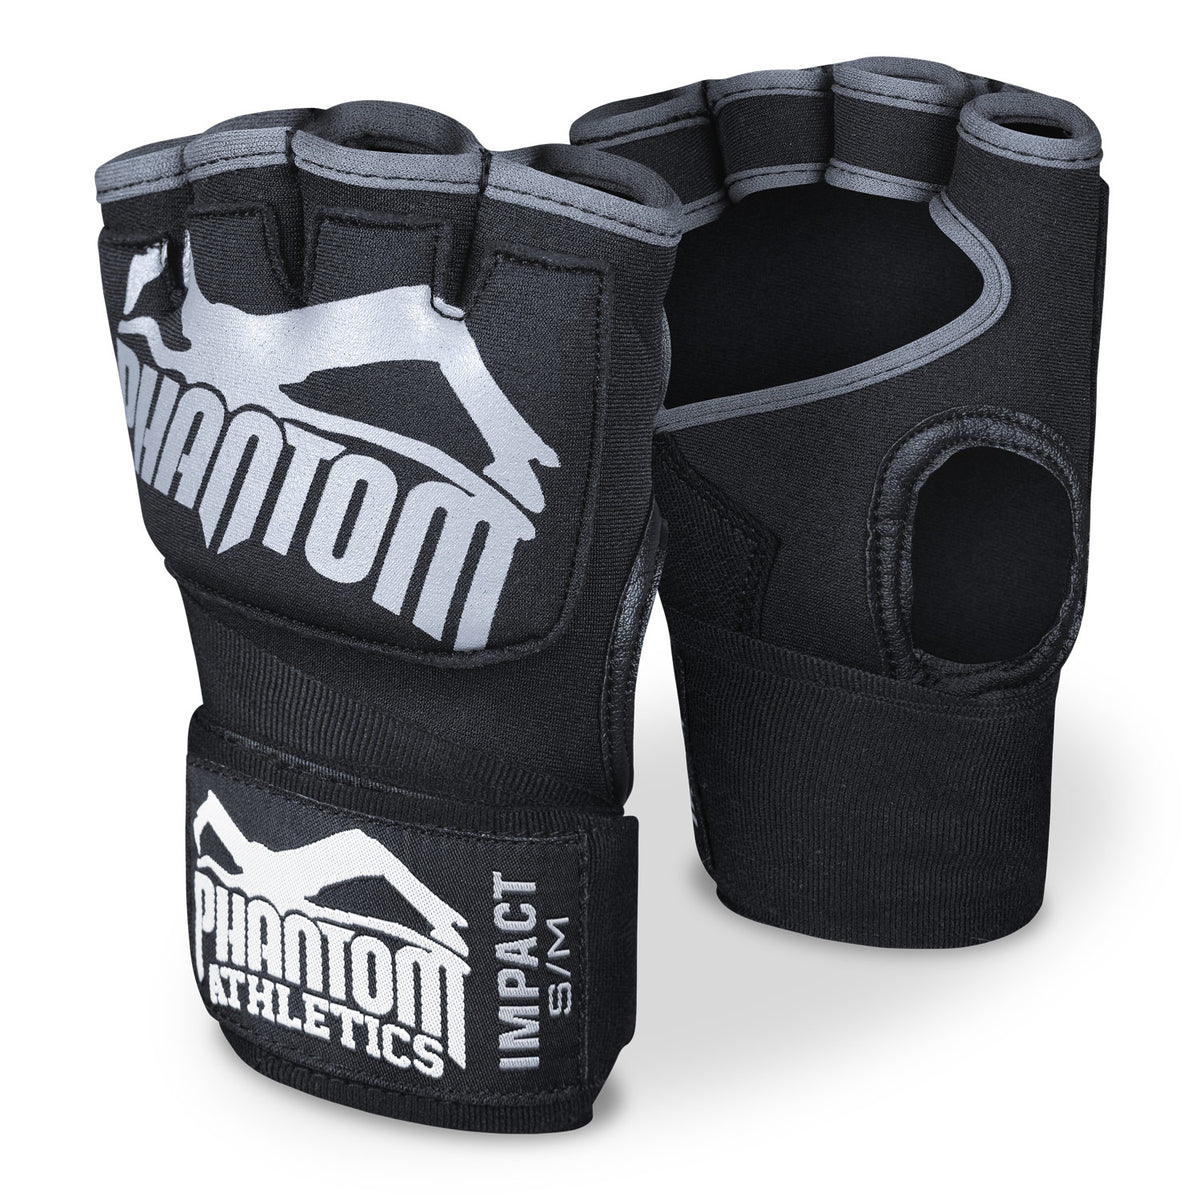 Boxerské obväzy Phantom Impact s gélovou výplňou. Pre väčšiu ochranu pri tréningu bojových umení.